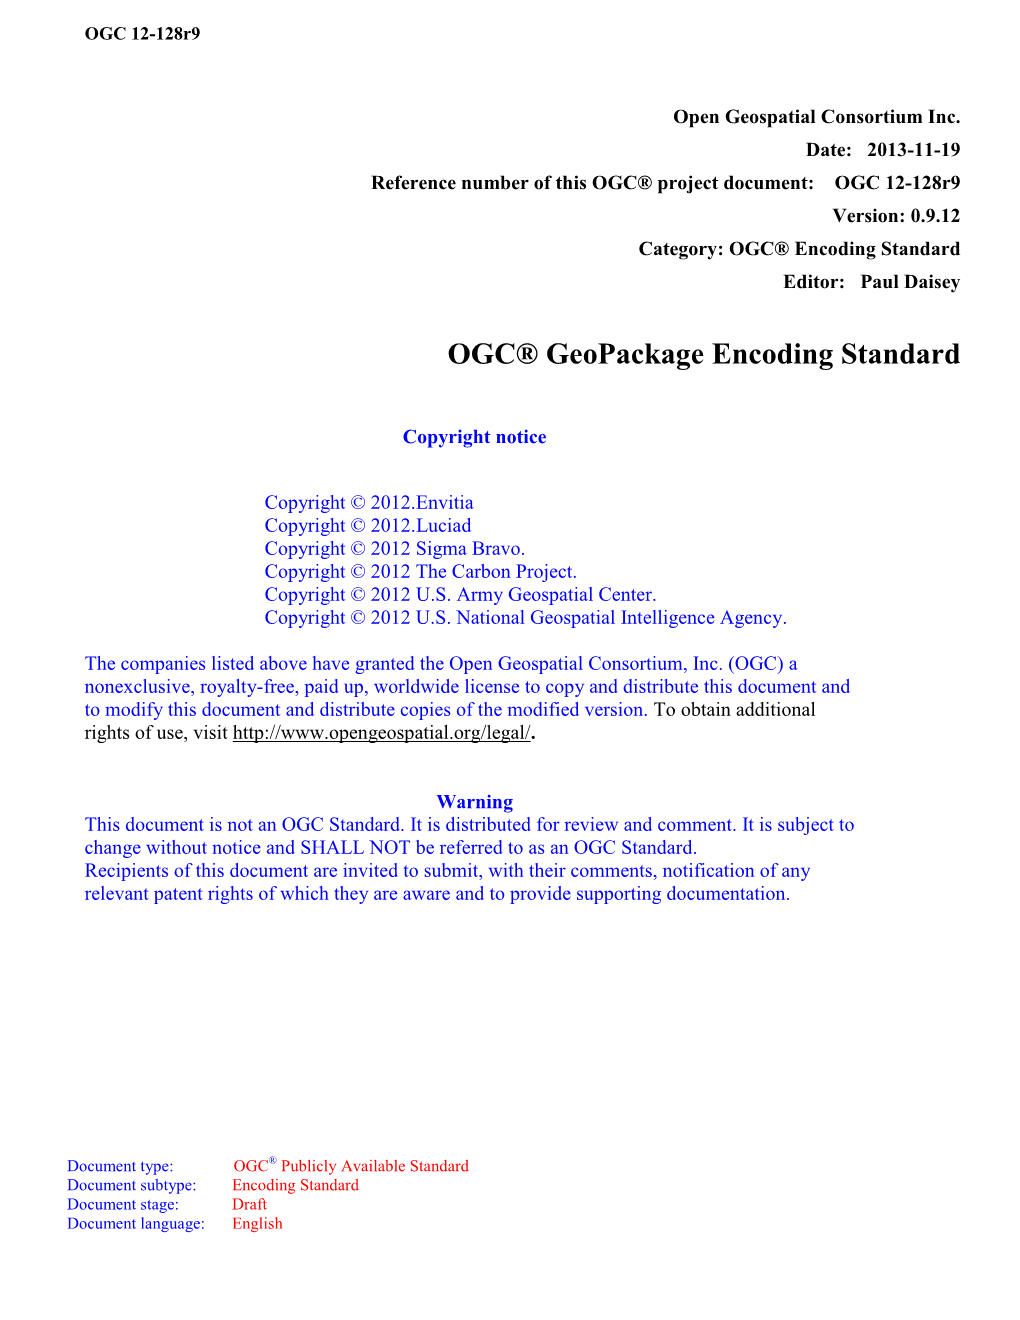 OGC® Geopackage Encoding Standard